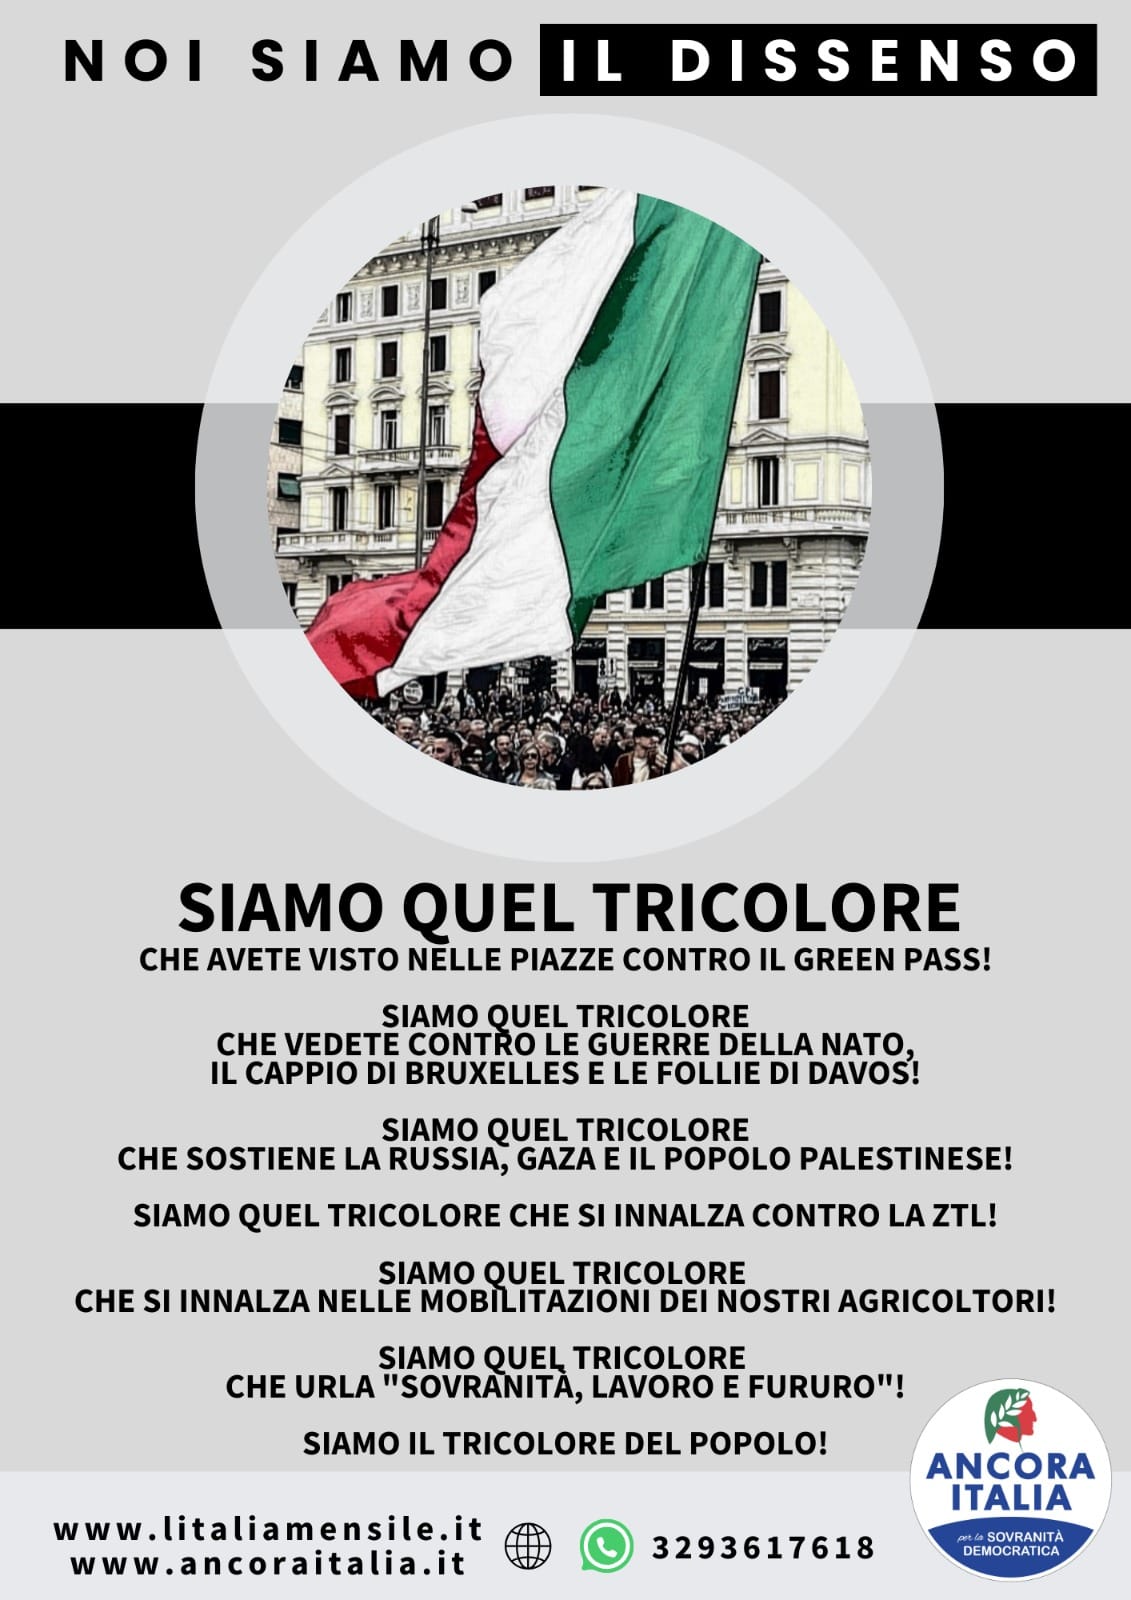 ANCORA ITALIA ROMA: Anche marzo mese di lotta, militanza, cultura e controinformazione